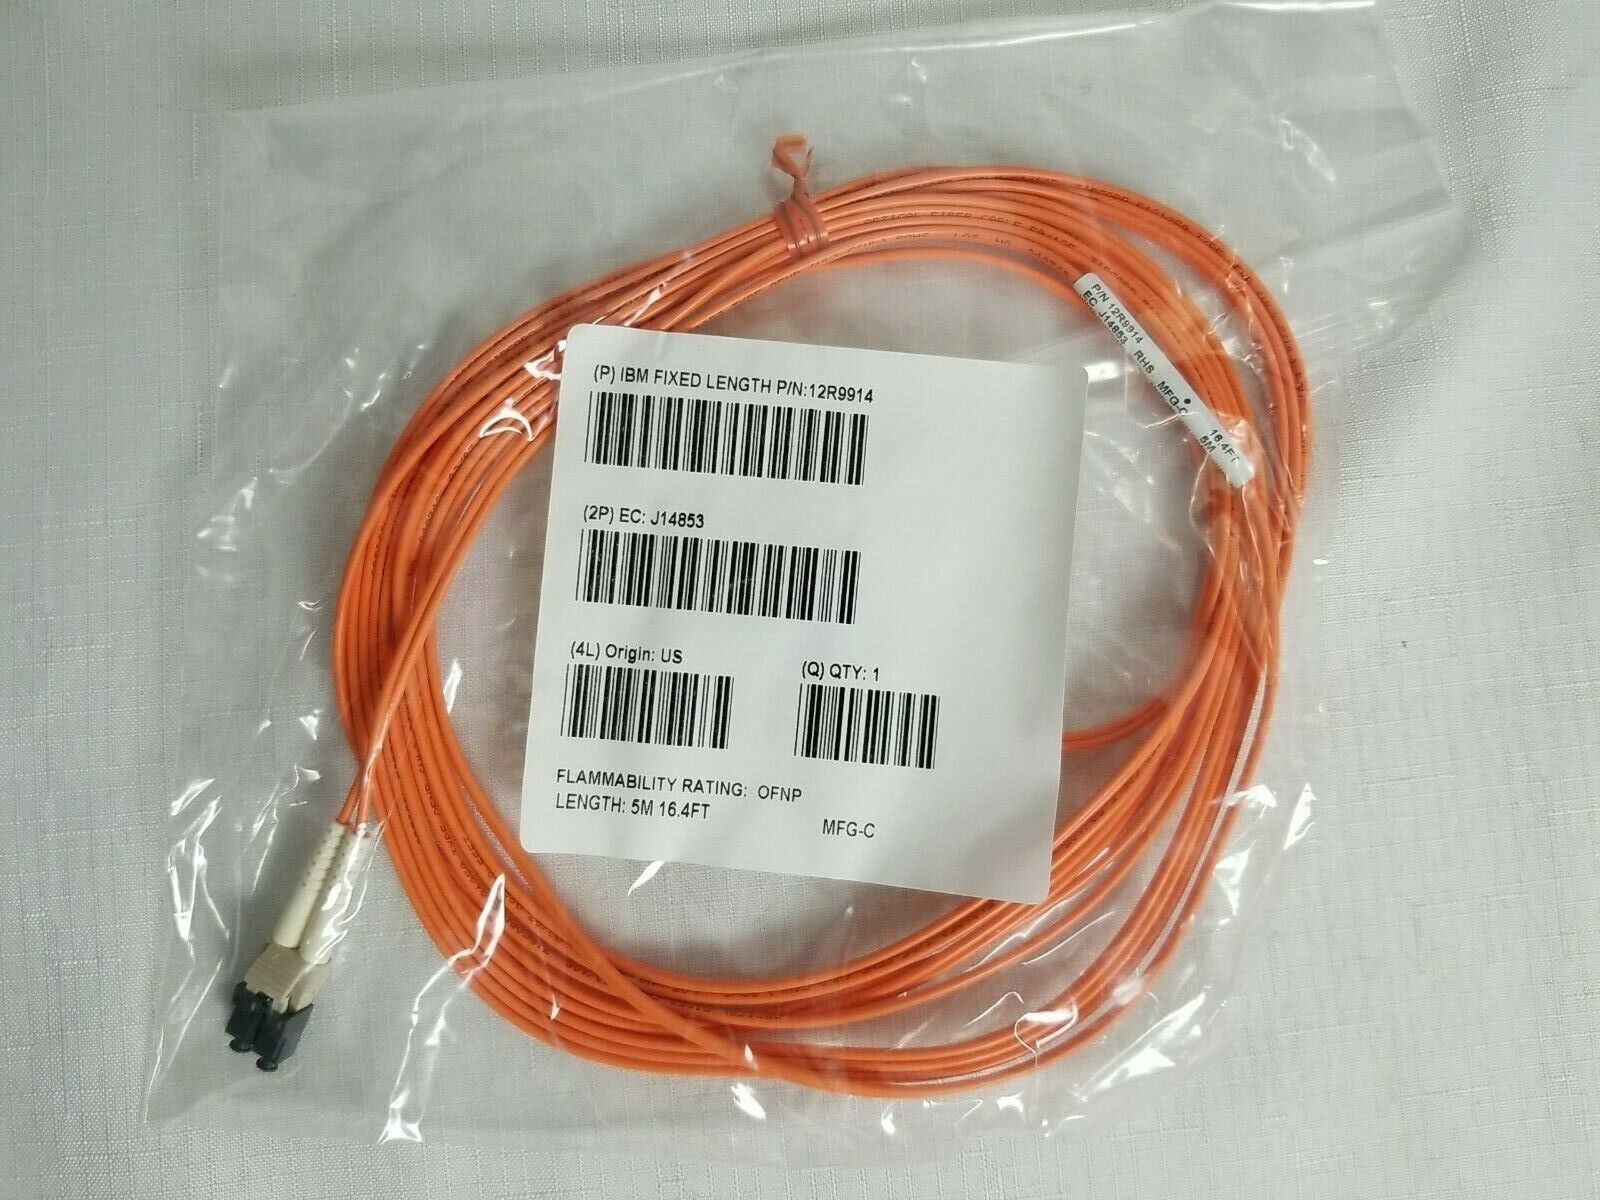 5M/16ft - LC/LC Fibre Cable 50/125 - IBM OEM - PN 12R9914  EC J14853 OFNP - New